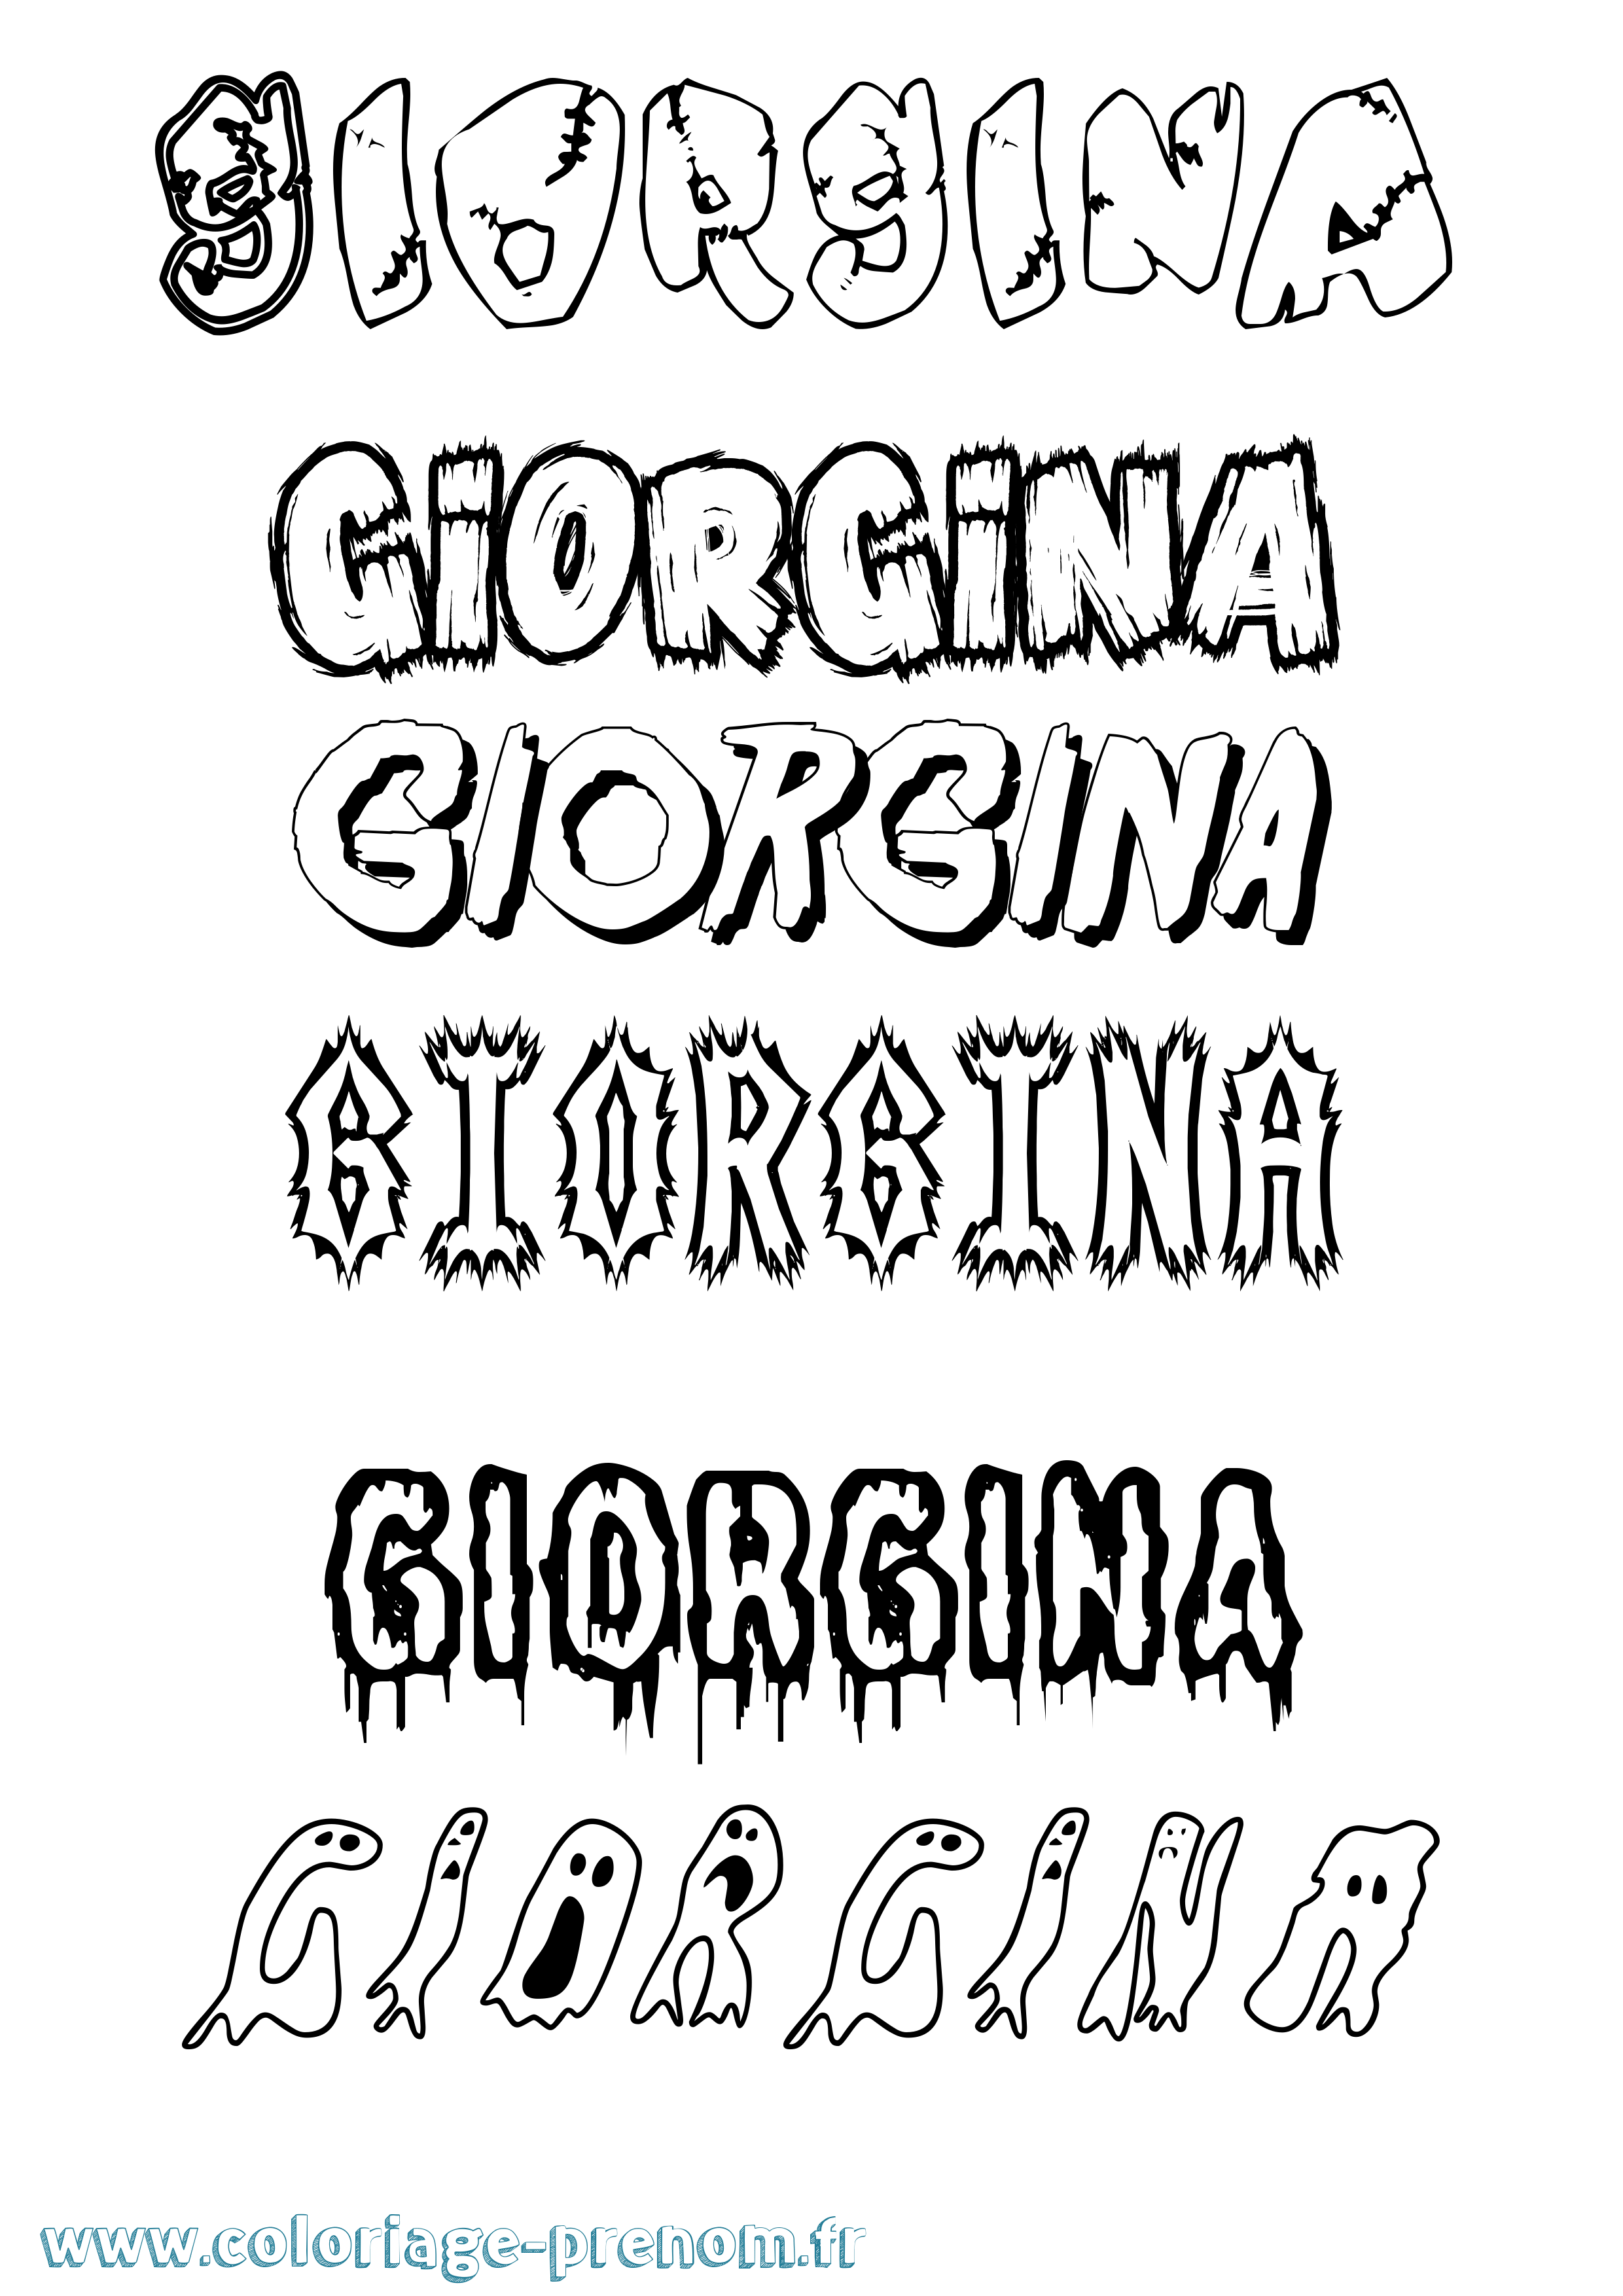 Coloriage prénom Giorgina Frisson